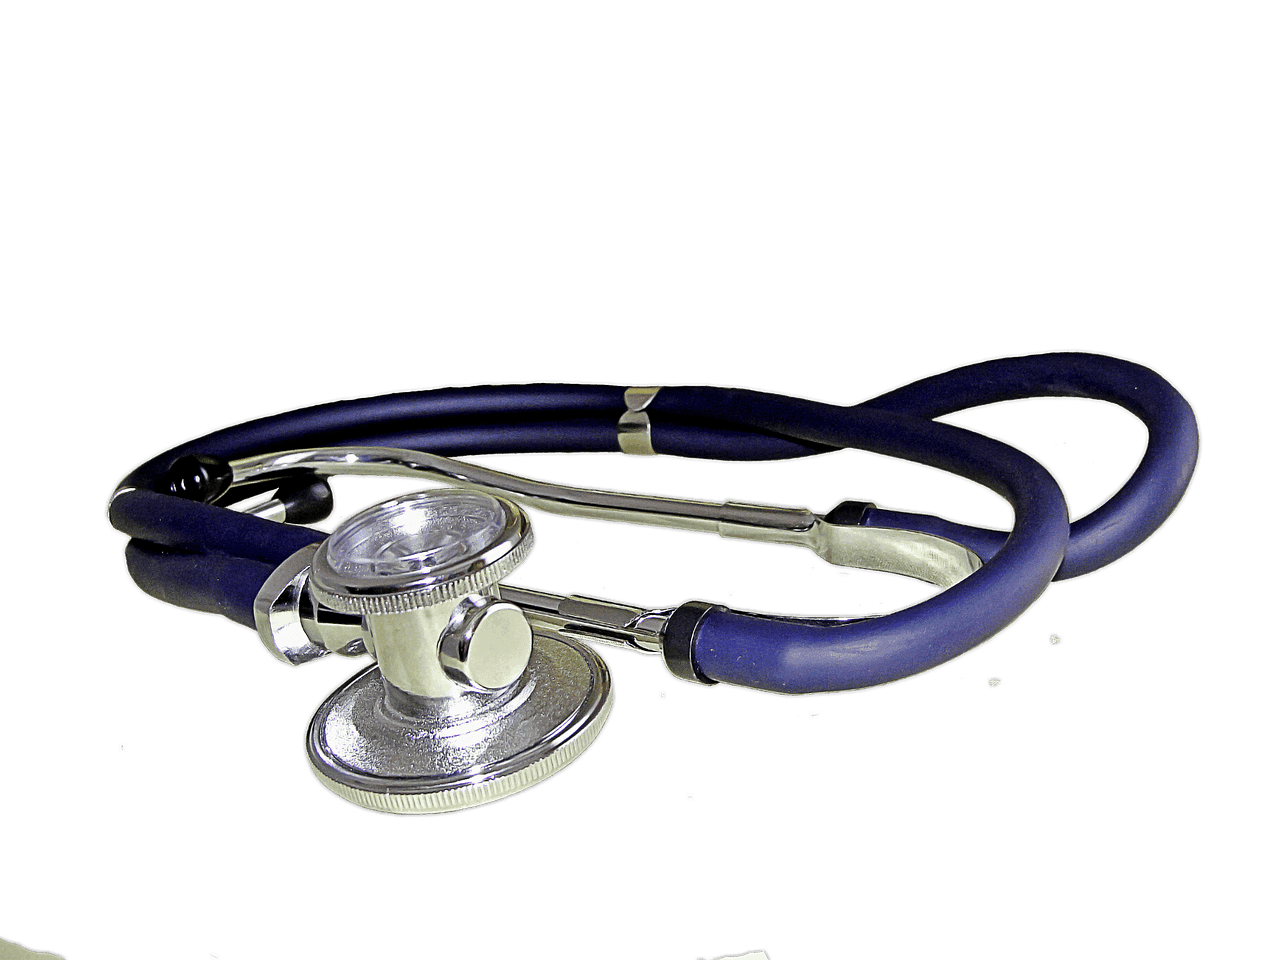 Medical stethoscope for EMTs